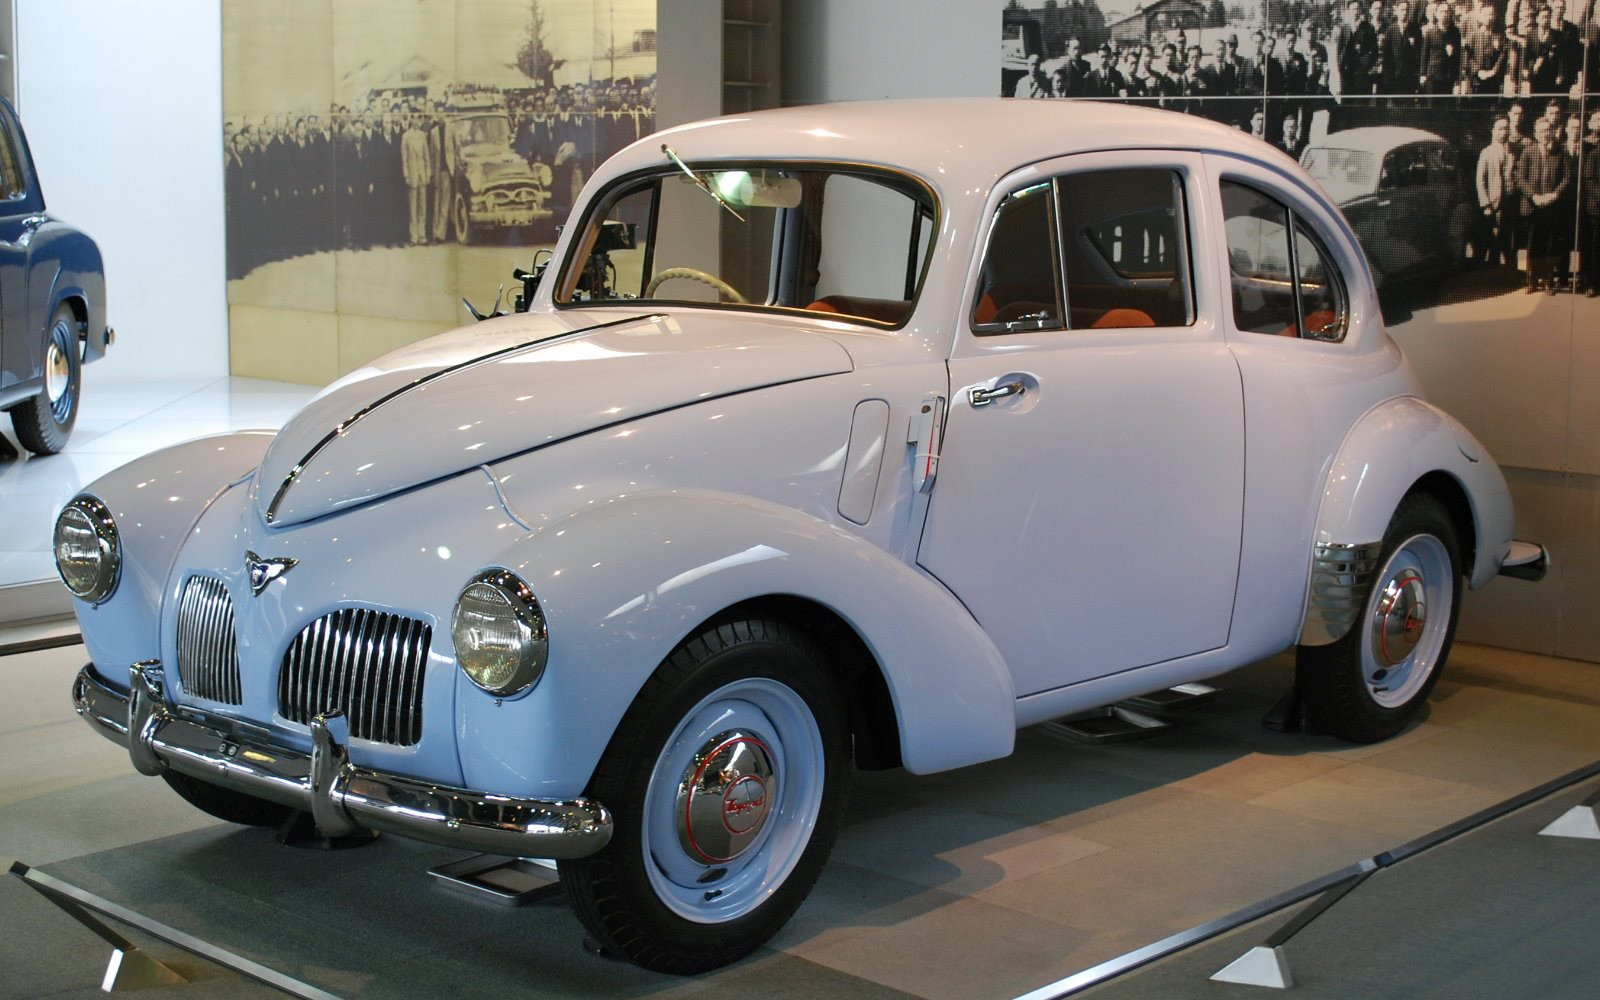 Ngày này năm xưa: 14/2, ‘ông tổ’ của tập đoàn ô tô hàng đầu thế giới ra đời, mở ra một kỷ nguyên mới cho ô tô ‘made in Japan’ - Ảnh 1.